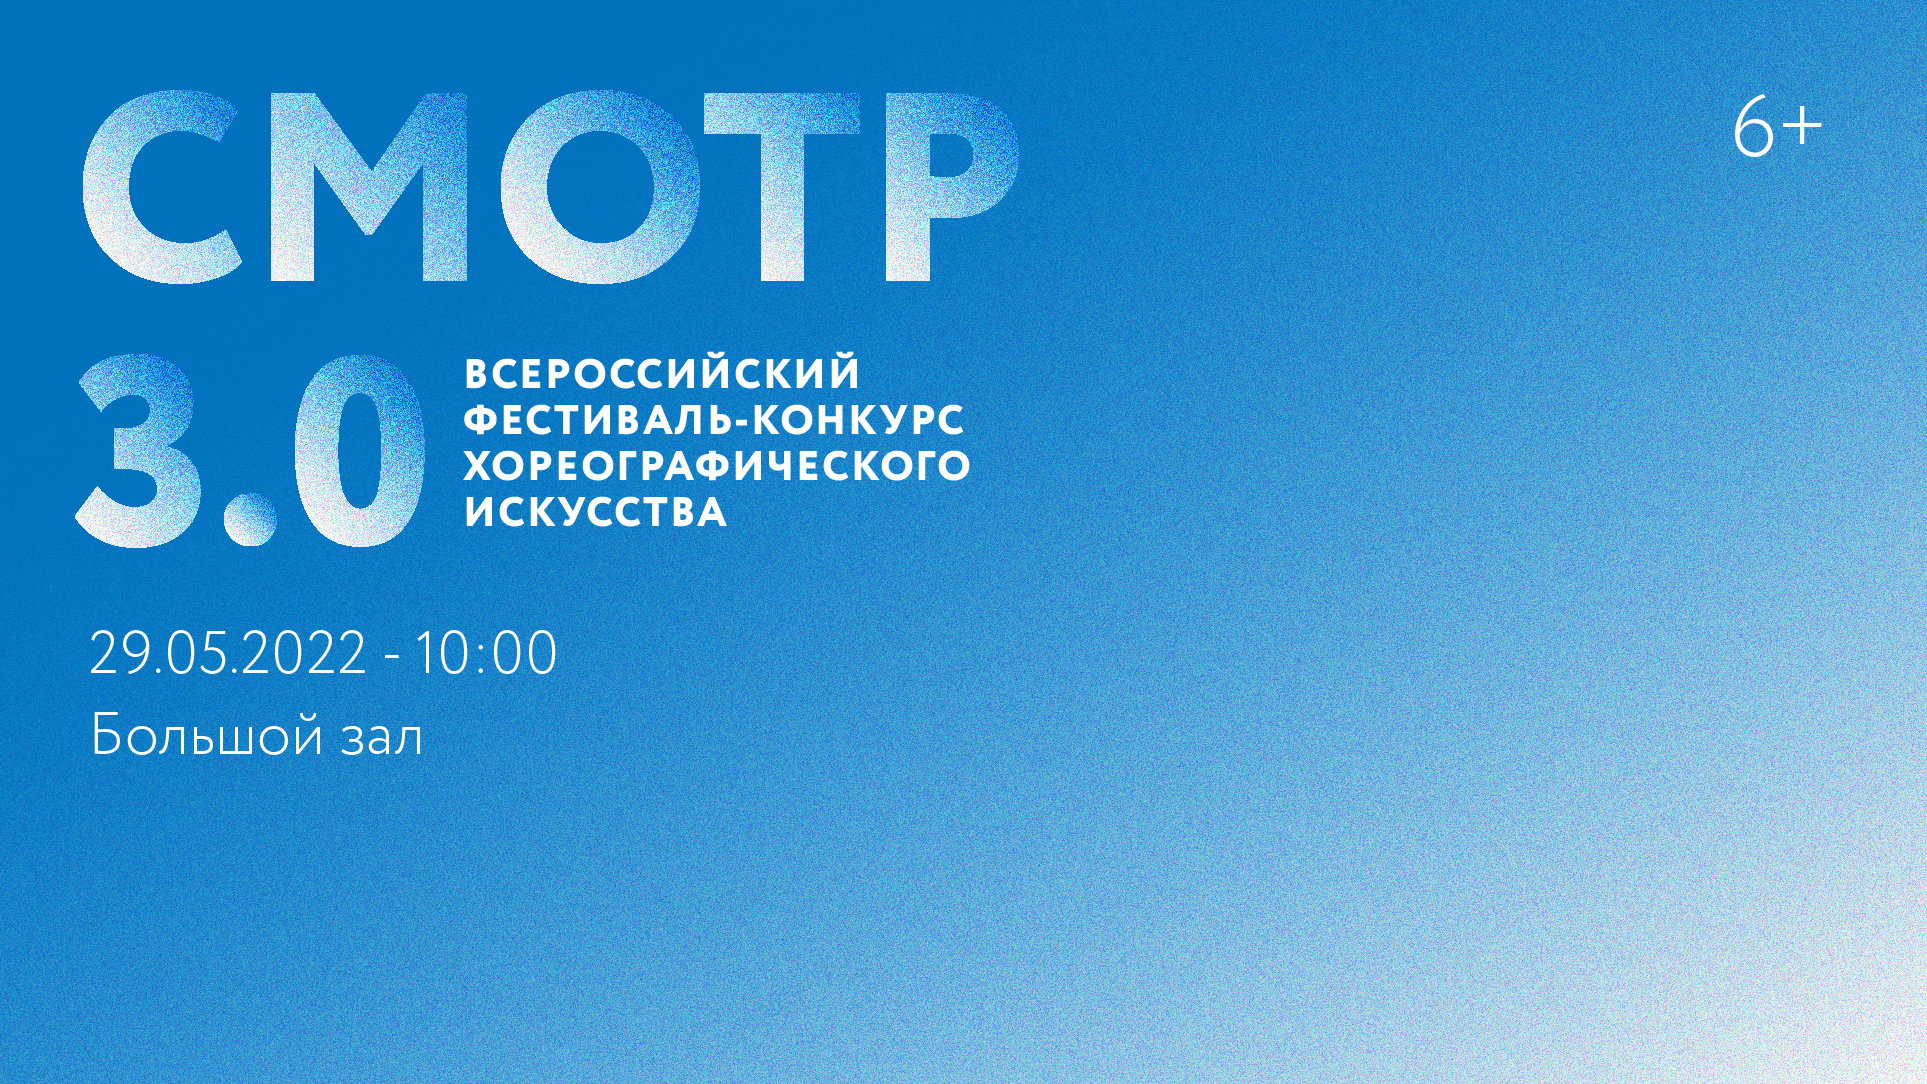 Всероссийский фестиваль-конкурс хореографического искусства «СМОТР 3.0»